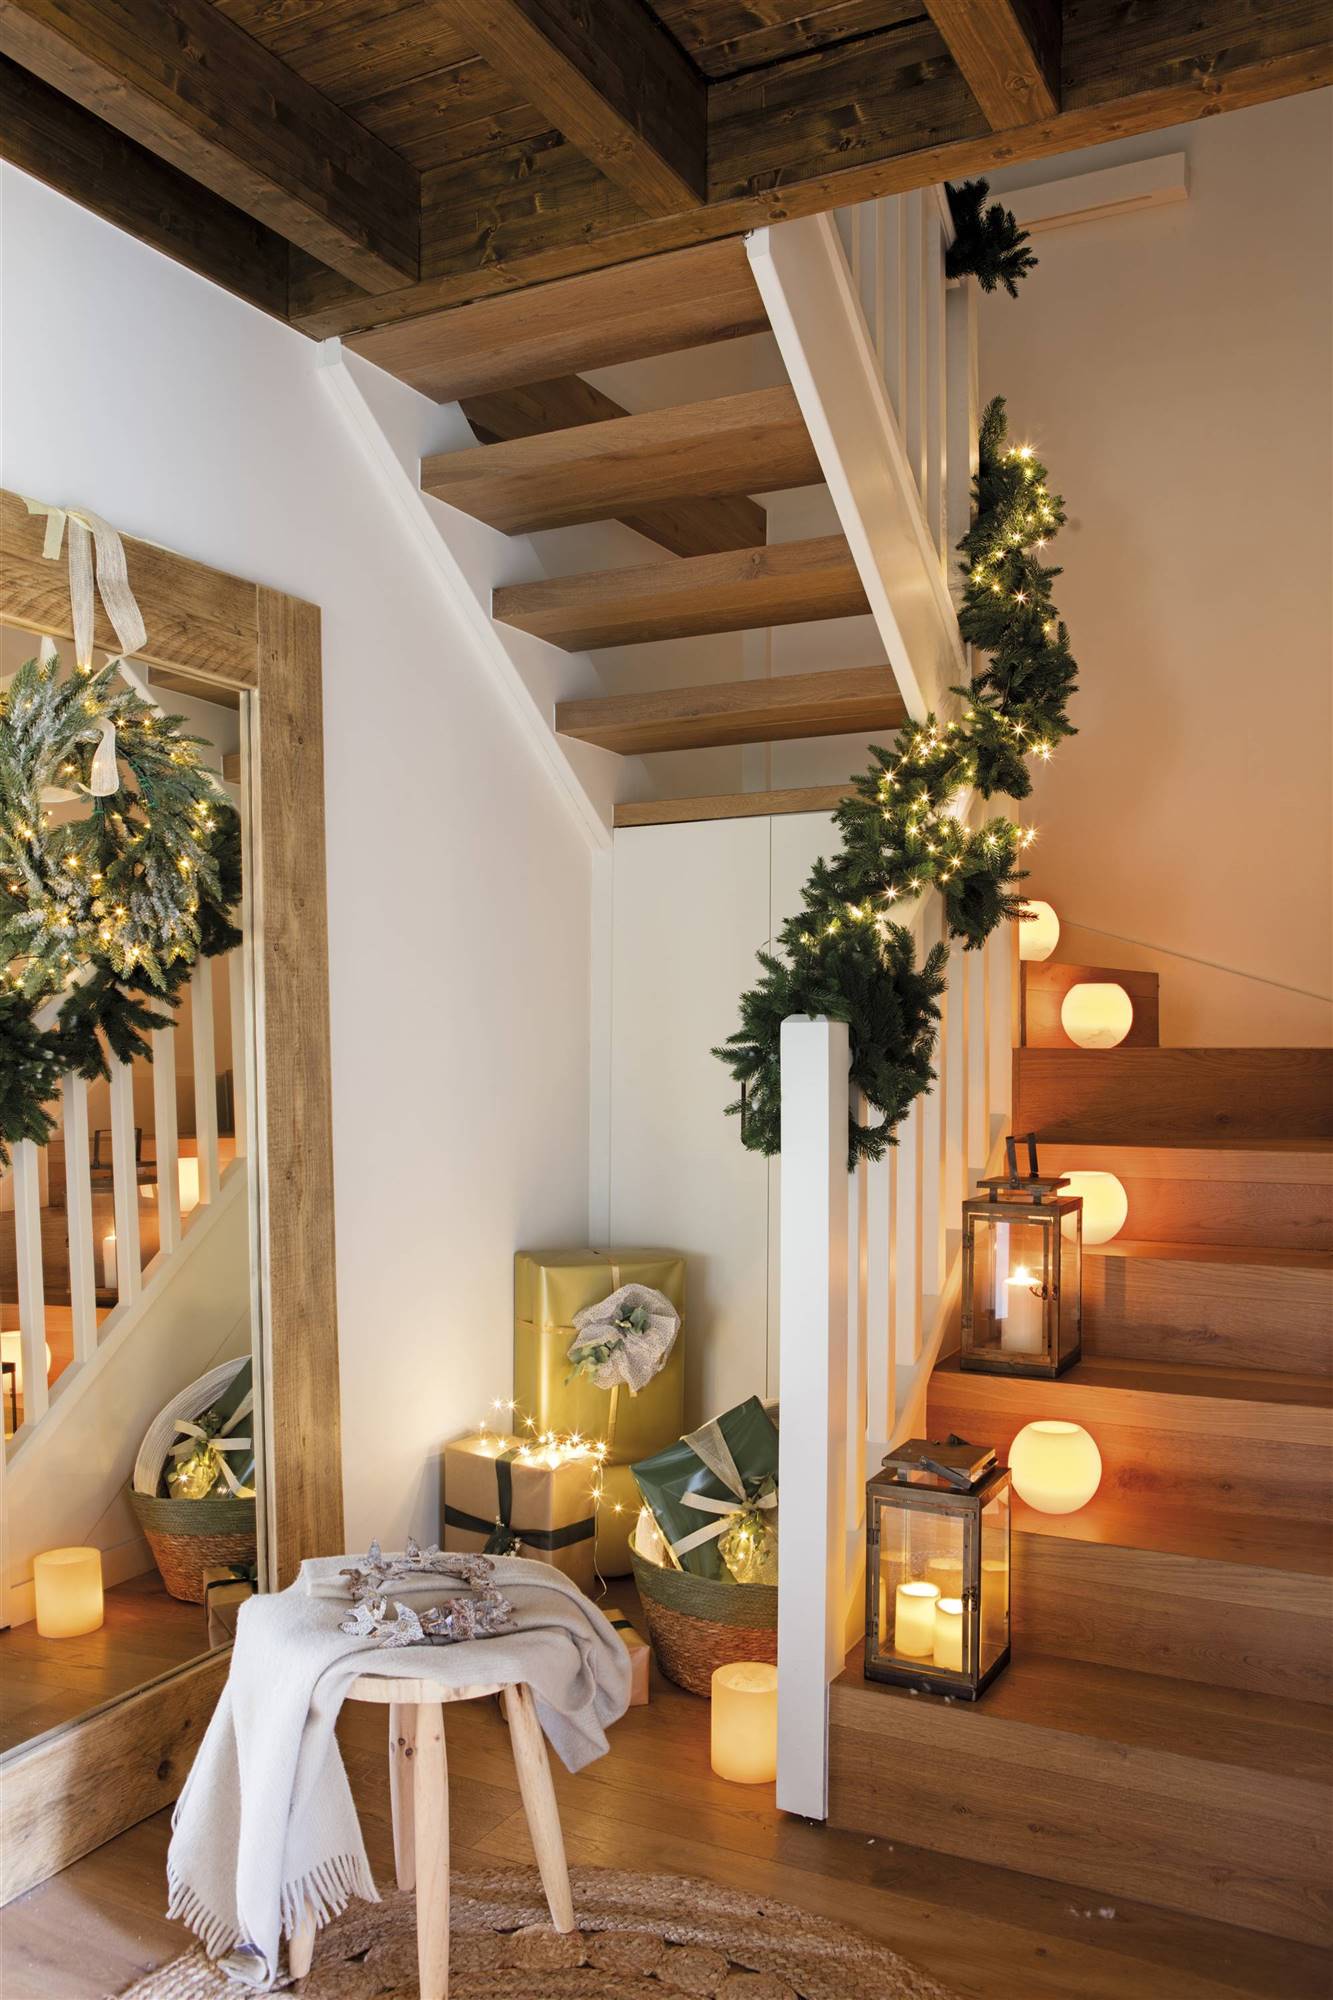 recibidor de navidad con las escaleras decoradas.